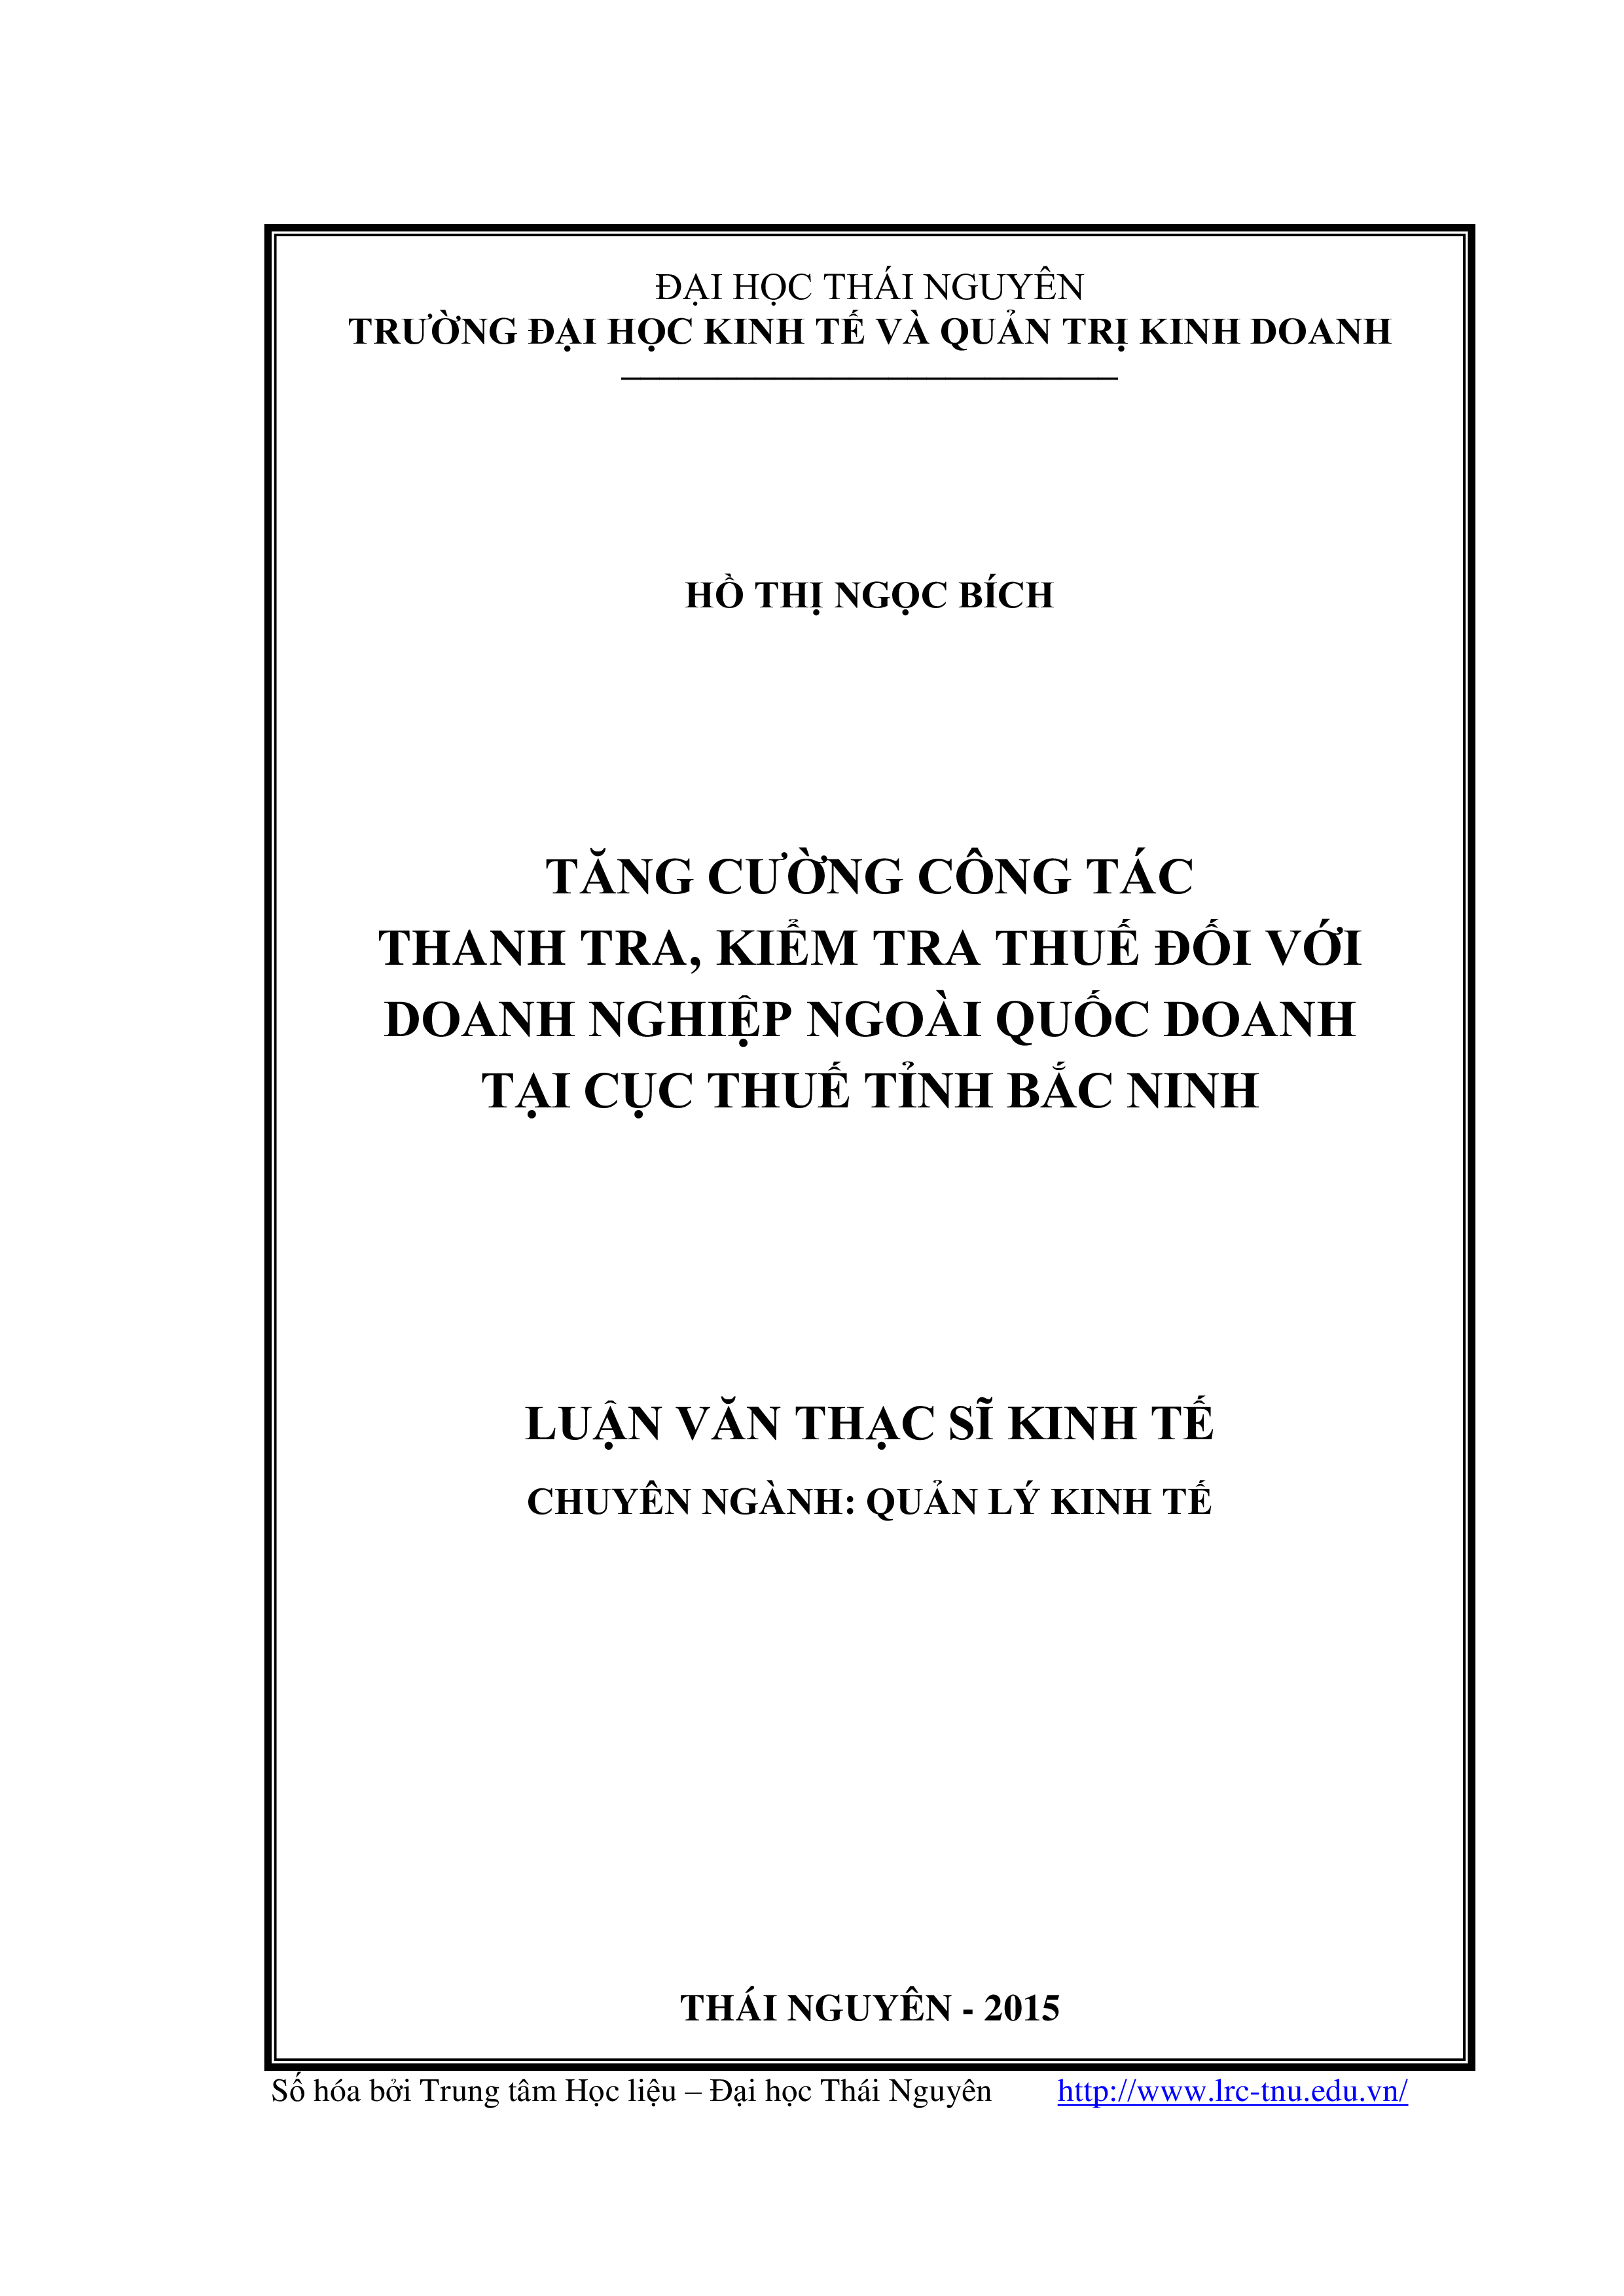 Tăng cường công tác thanh tra, kiểm tra thuế đối với doanh nghiệp ngoài quốc doanh tại cục thuế tỉnh Bắc Ninh